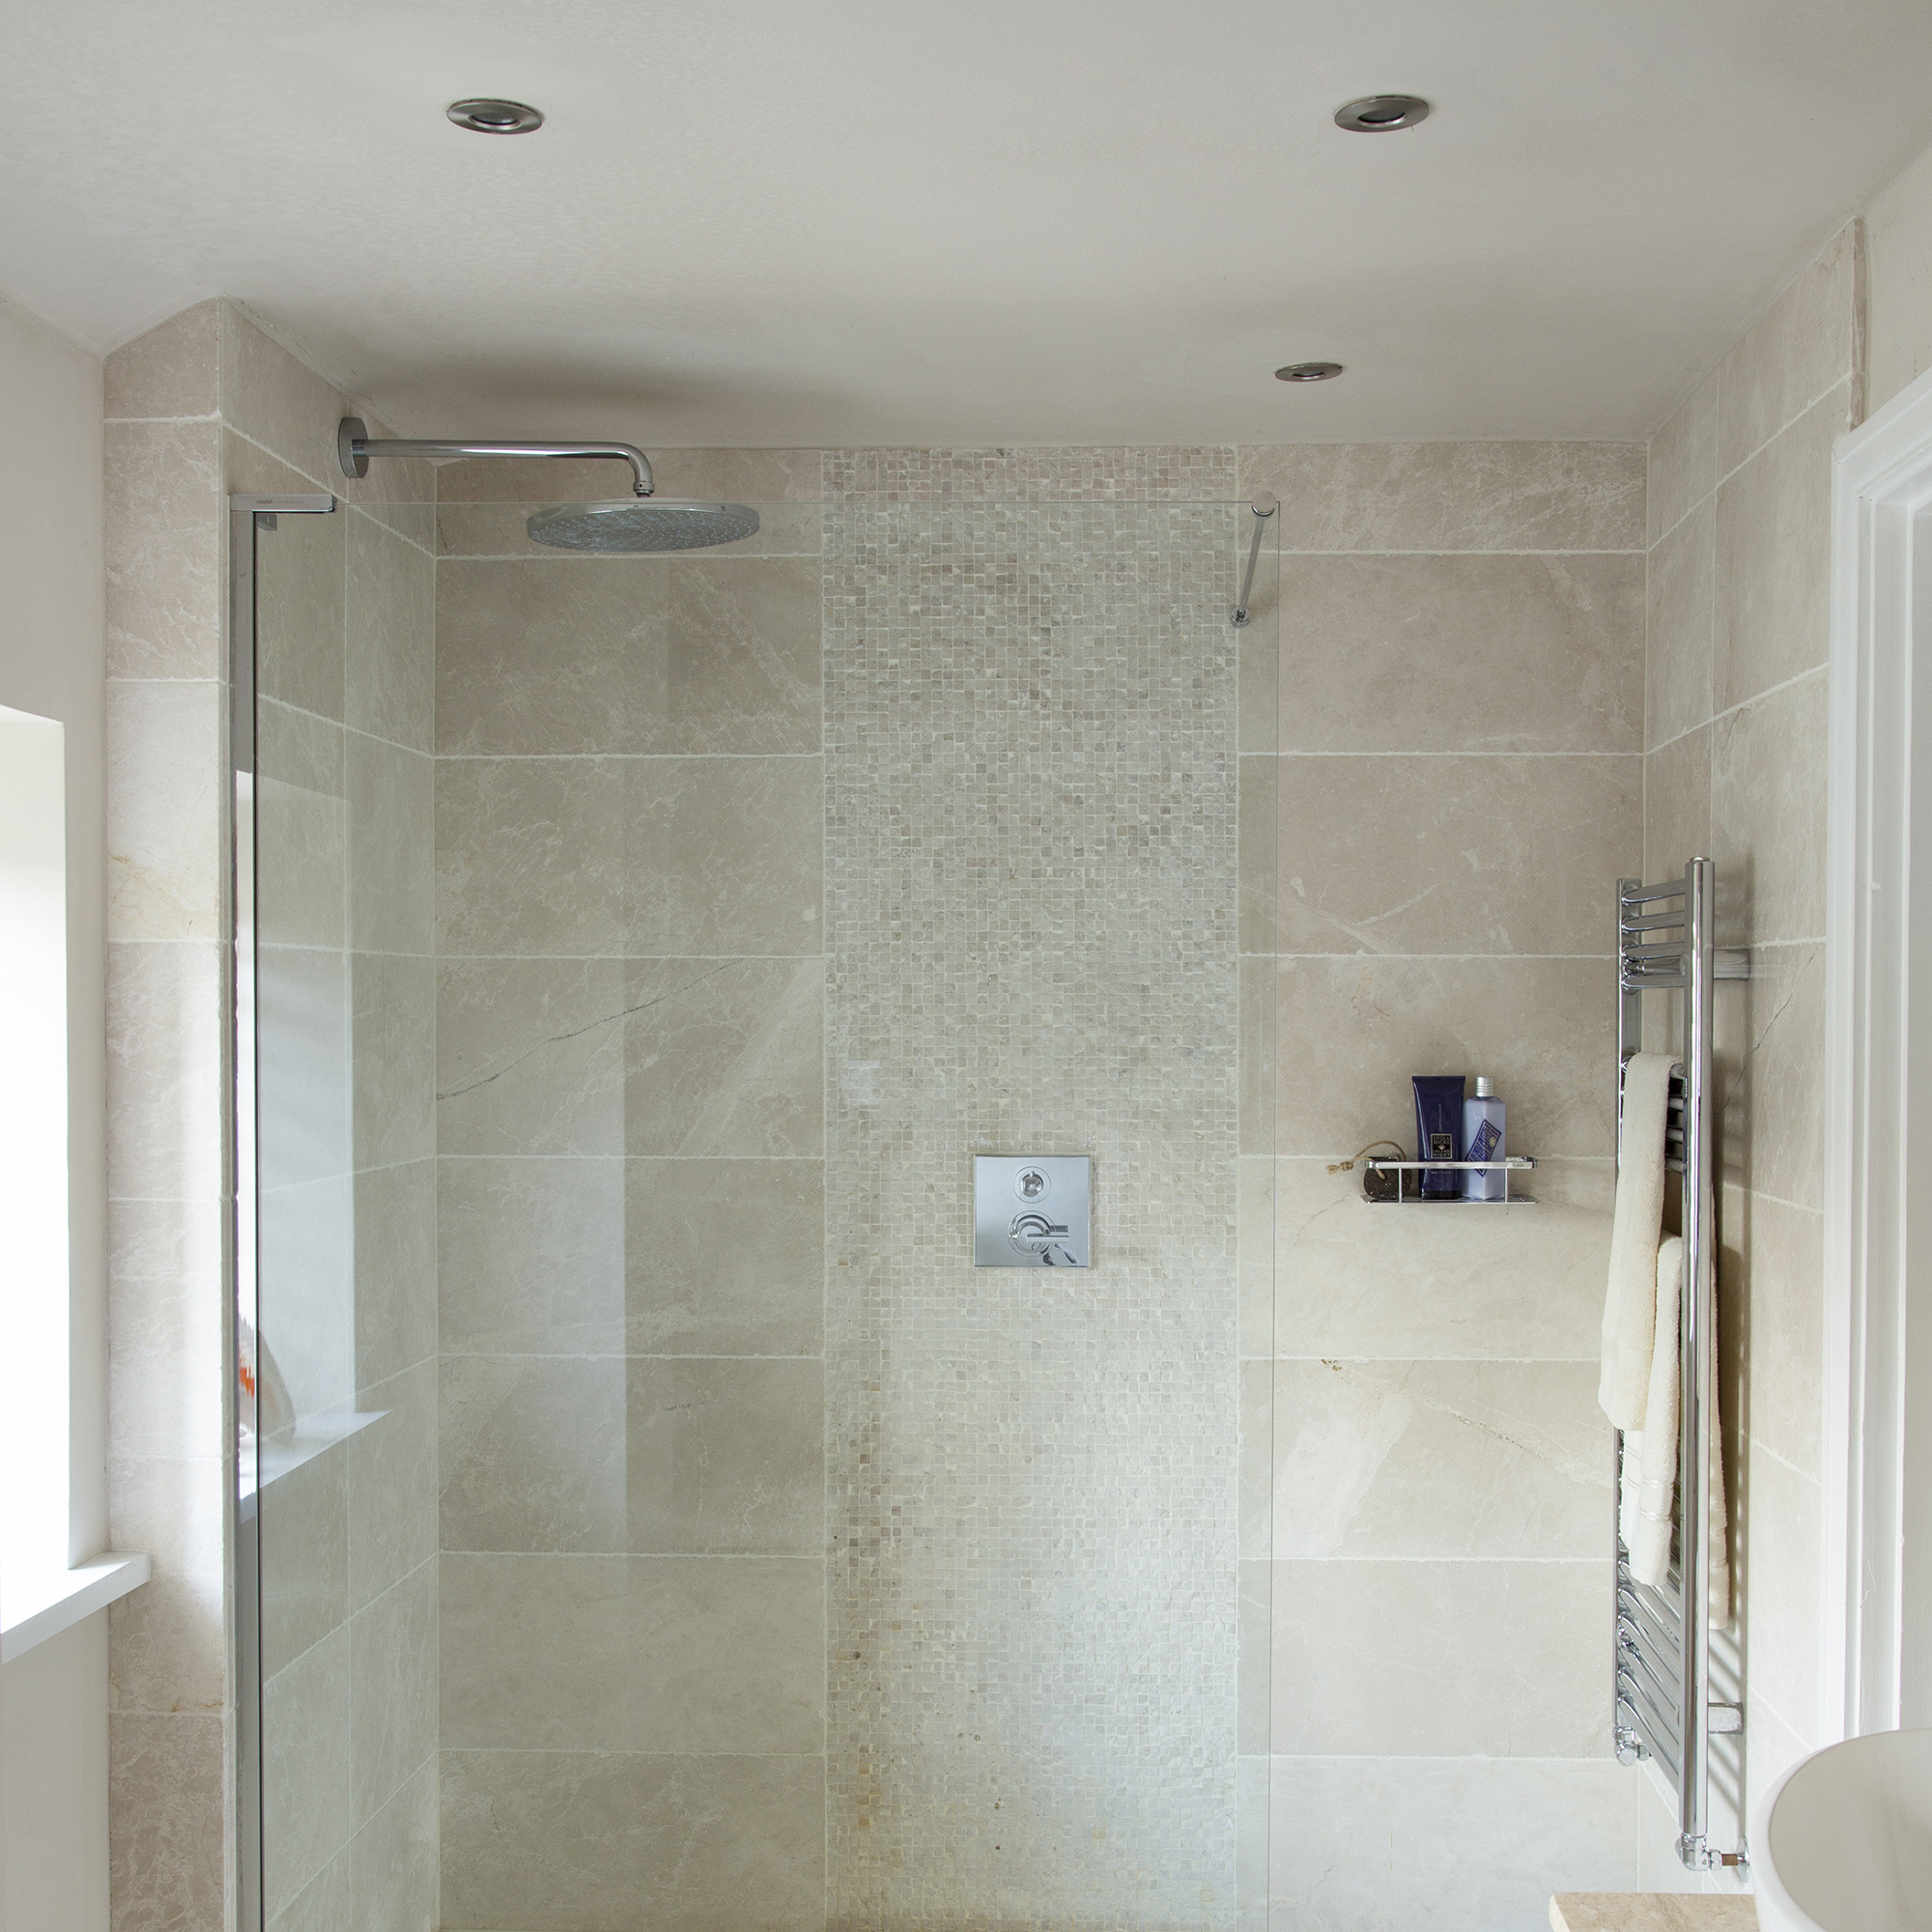 iluminacion zona ducha: ducha de azulejos neutros con panel de pared de mosaico. pantalla de cristal Casa propiedad de Livia Simoka y Pete Allibone. baño de piedra caliza